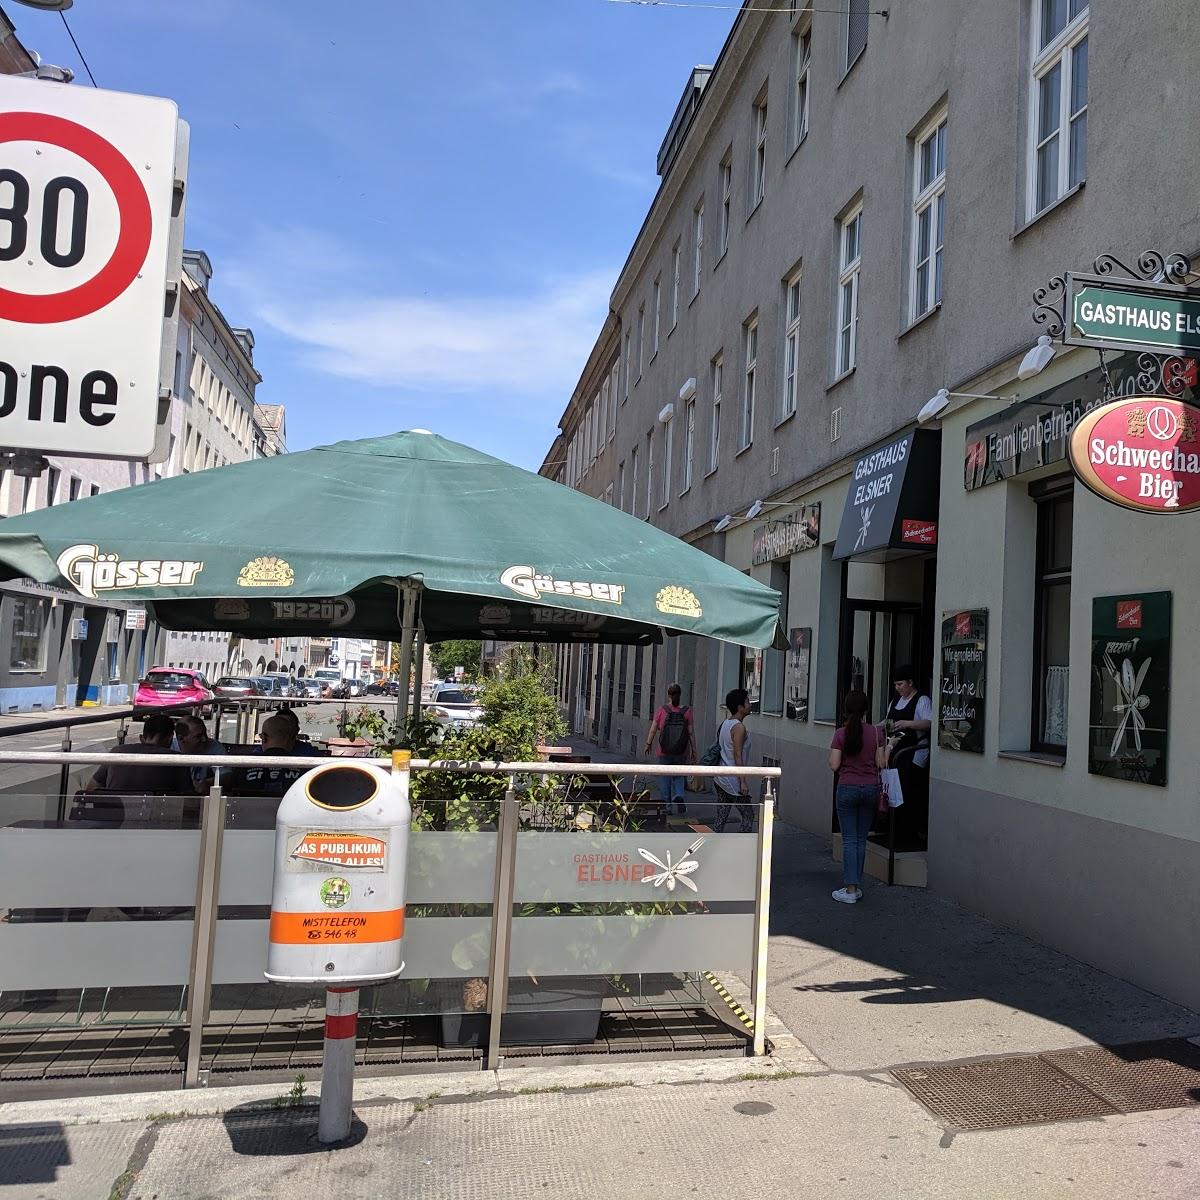 Restaurant "Restaurant Rote Bar" in Wien